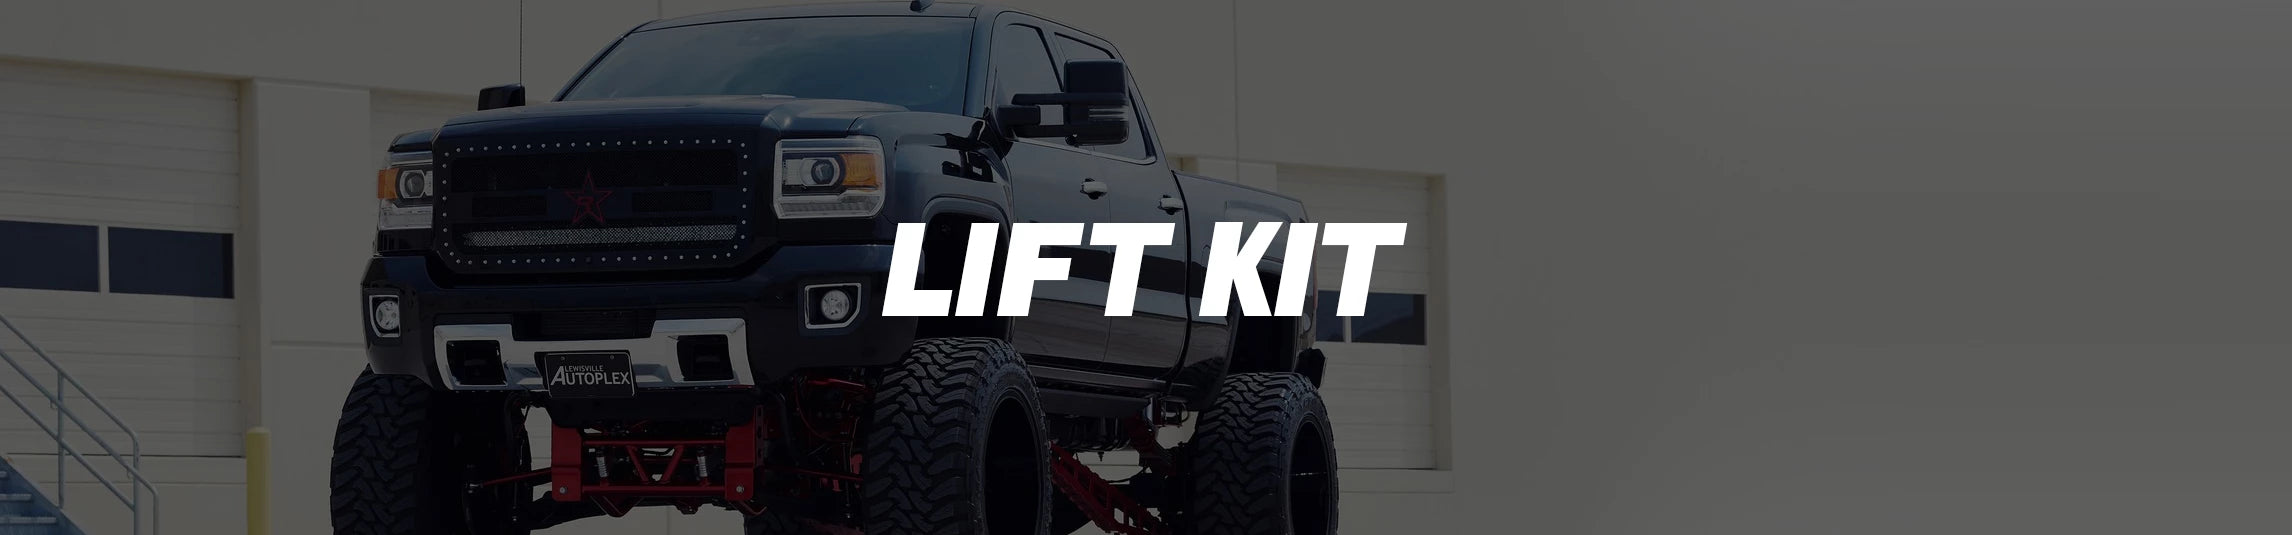 Lift kit